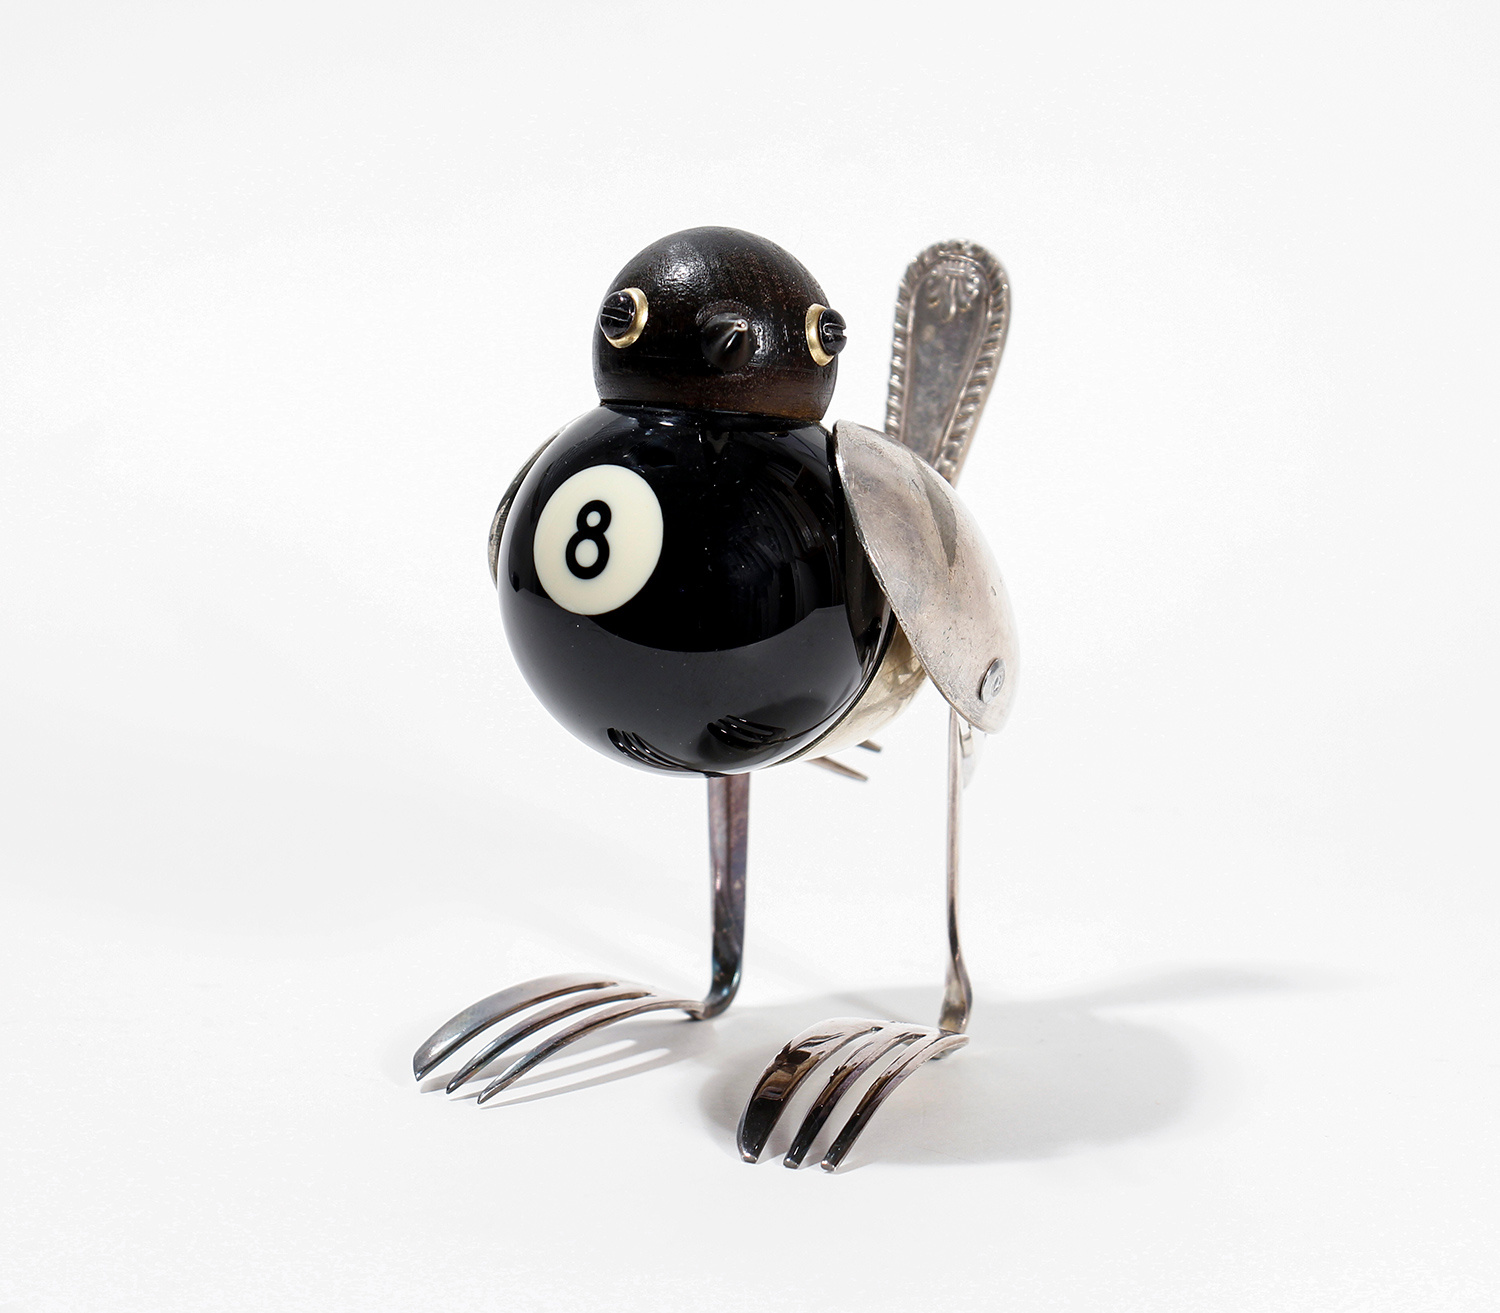 8 Ball Blackbird by Dean Patman